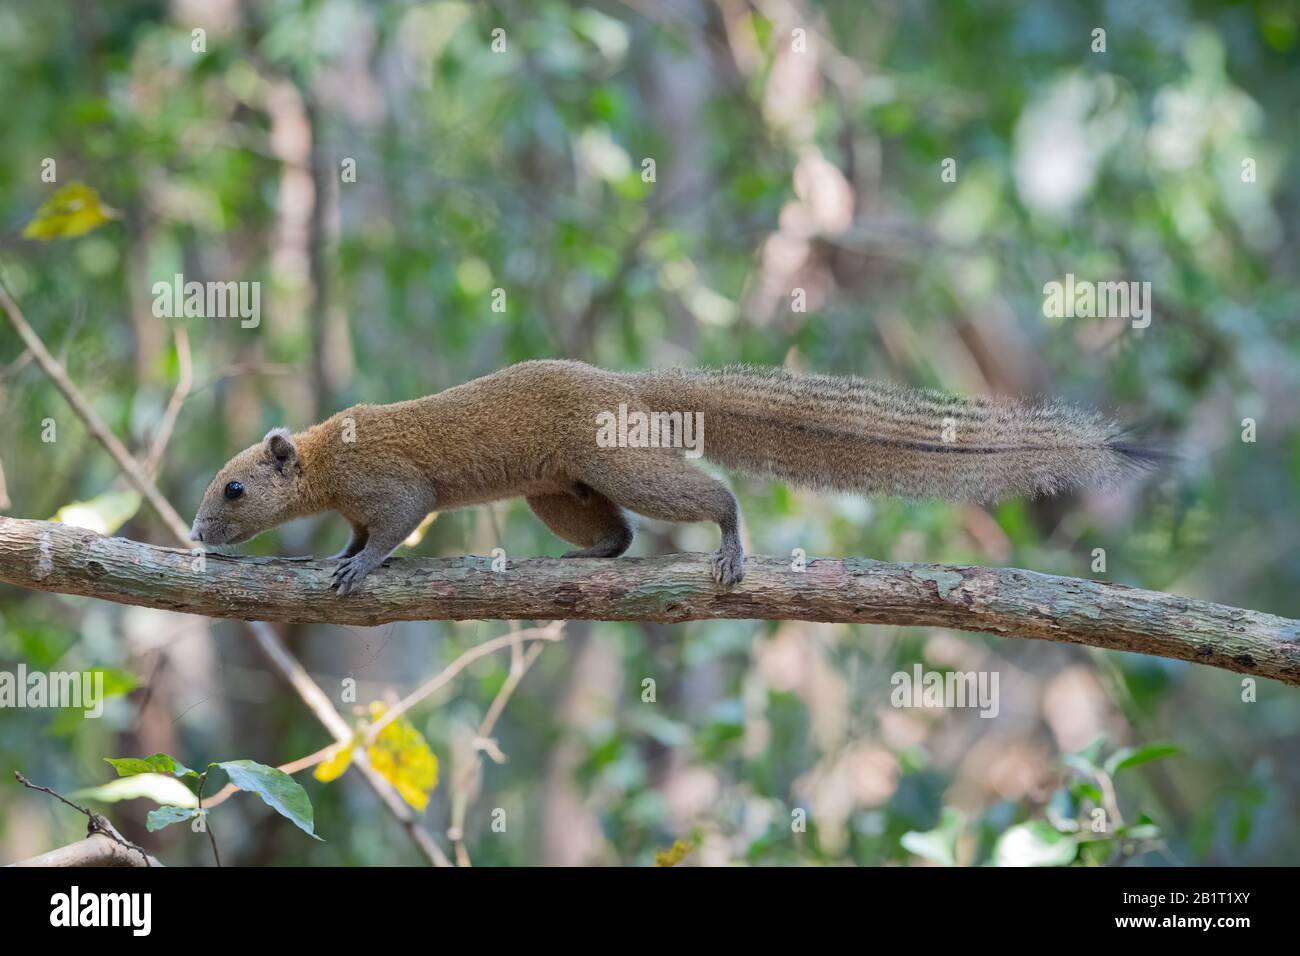 Das Graubächelhörnchen (Callosciurus caniceps) ist eine Nagetierart in der Familie Sciuriden. Sie kommt in Wald, Plantagen und Gärten in T vor Stockfoto